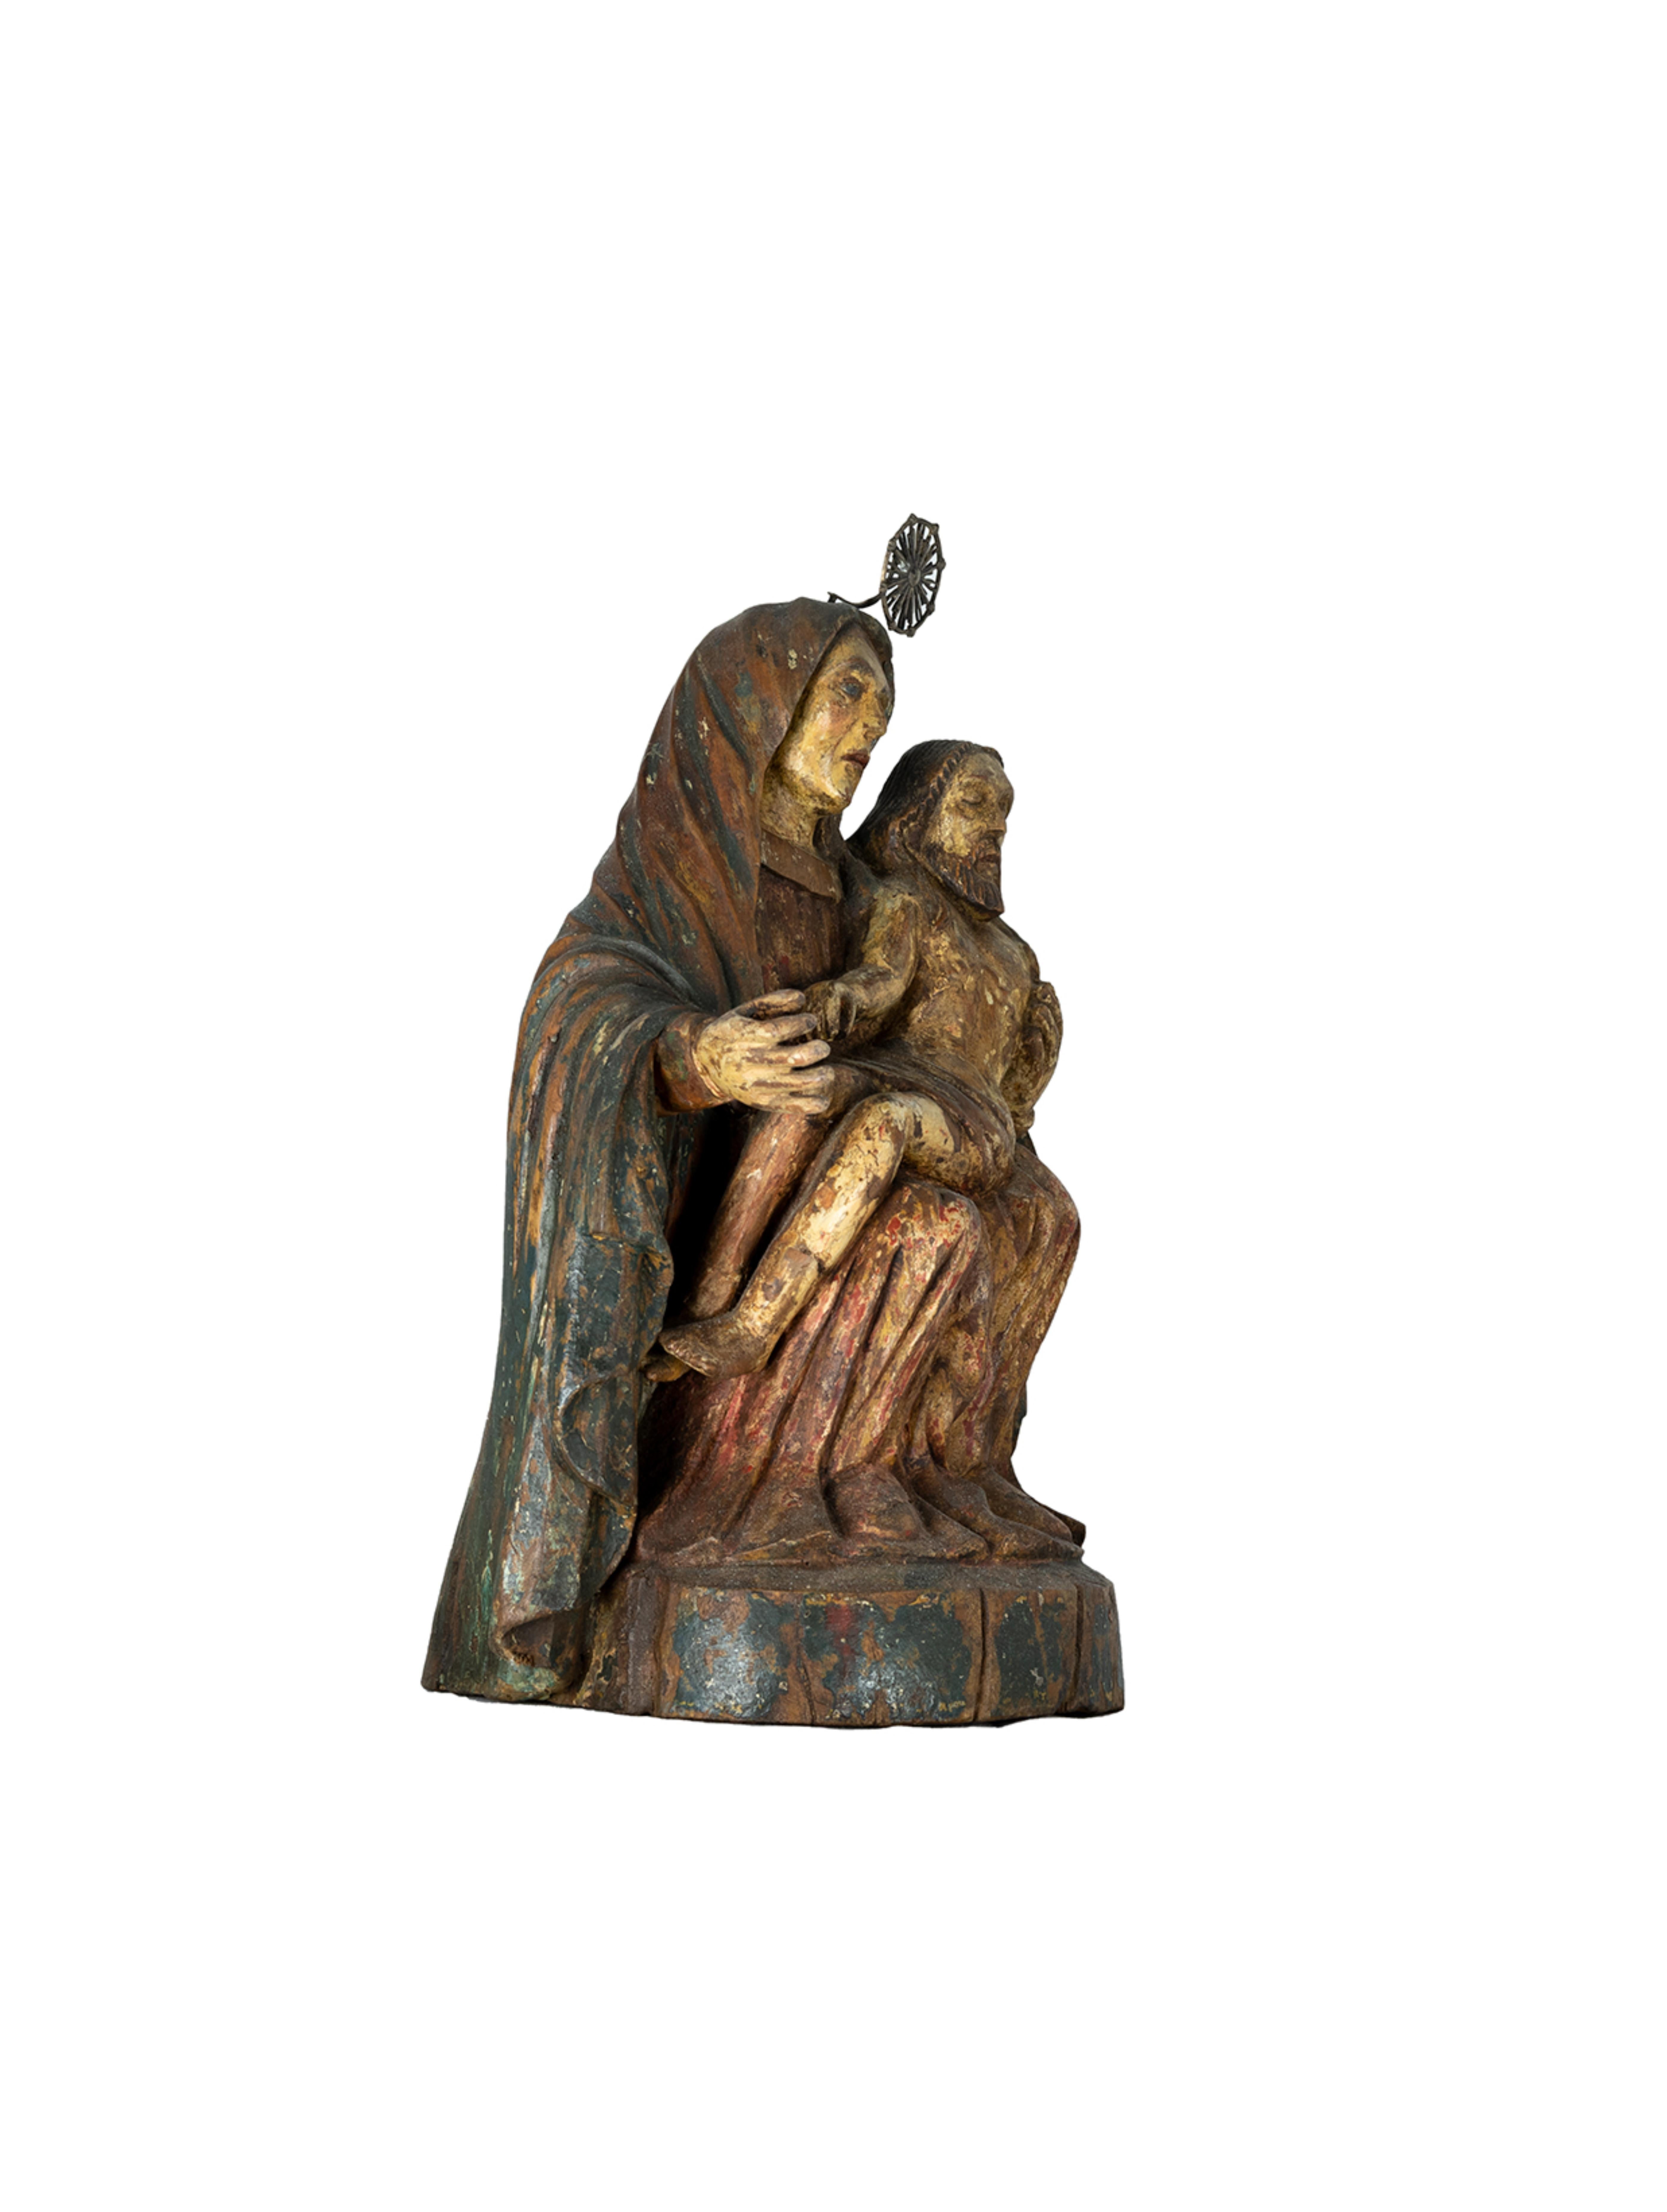 Figure de la Pietà ou ''Vierge de la Miséricorde'' du 18ème siècle, sculptée en bois de châtaignier polychrome. La Vierge apparaît assise sur le trône, la tête couverte d'un manteau, soutenant de son bras gauche le corps inerte du Christ. Le visage